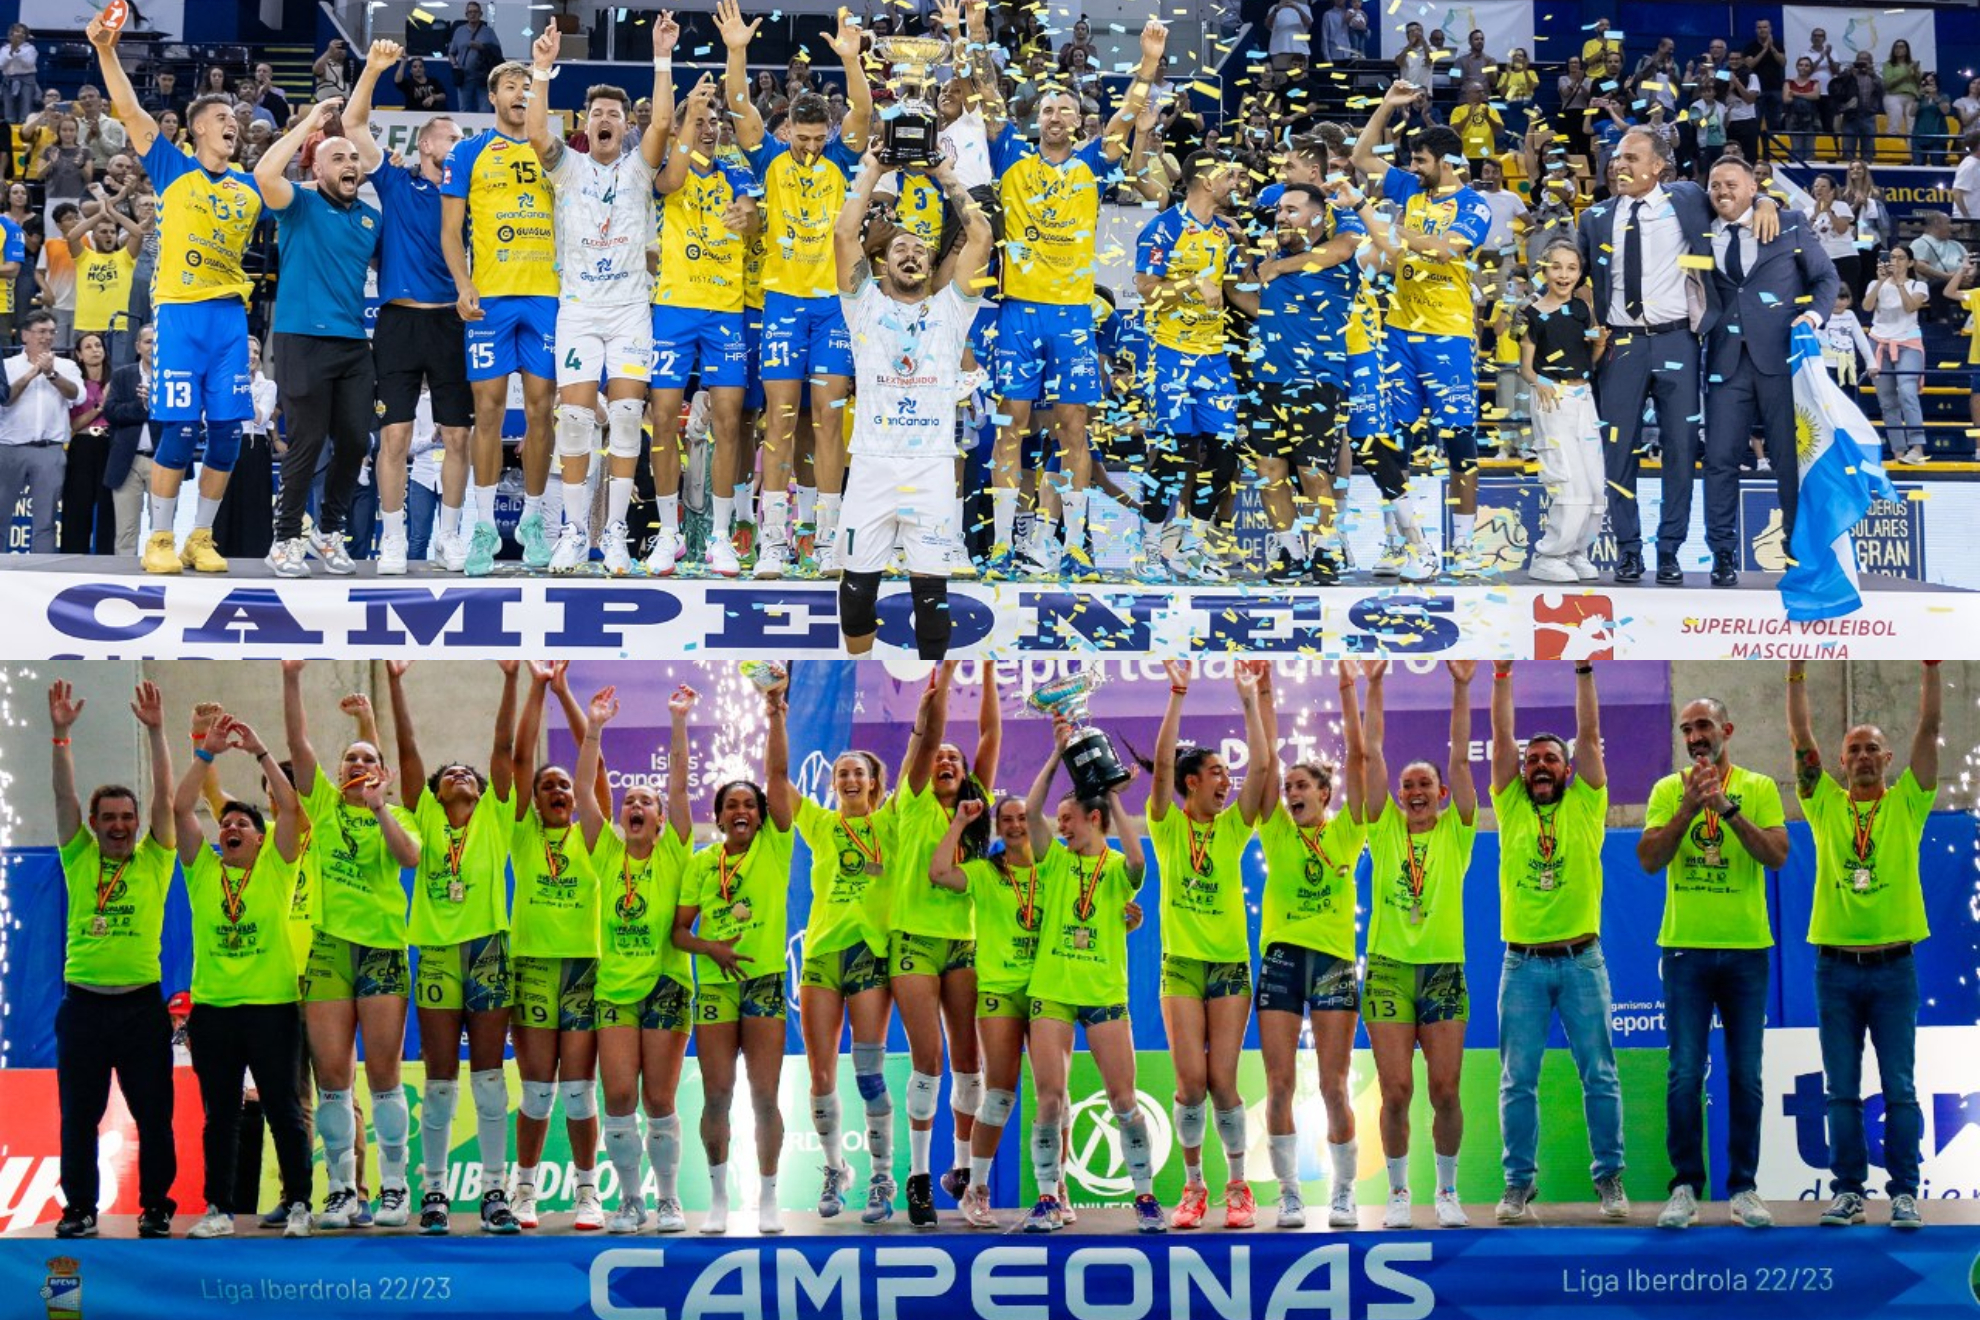 Guaguas y Olímpico, con los títulos de campeones de la Superliga masculina y femenina, respectivamente.